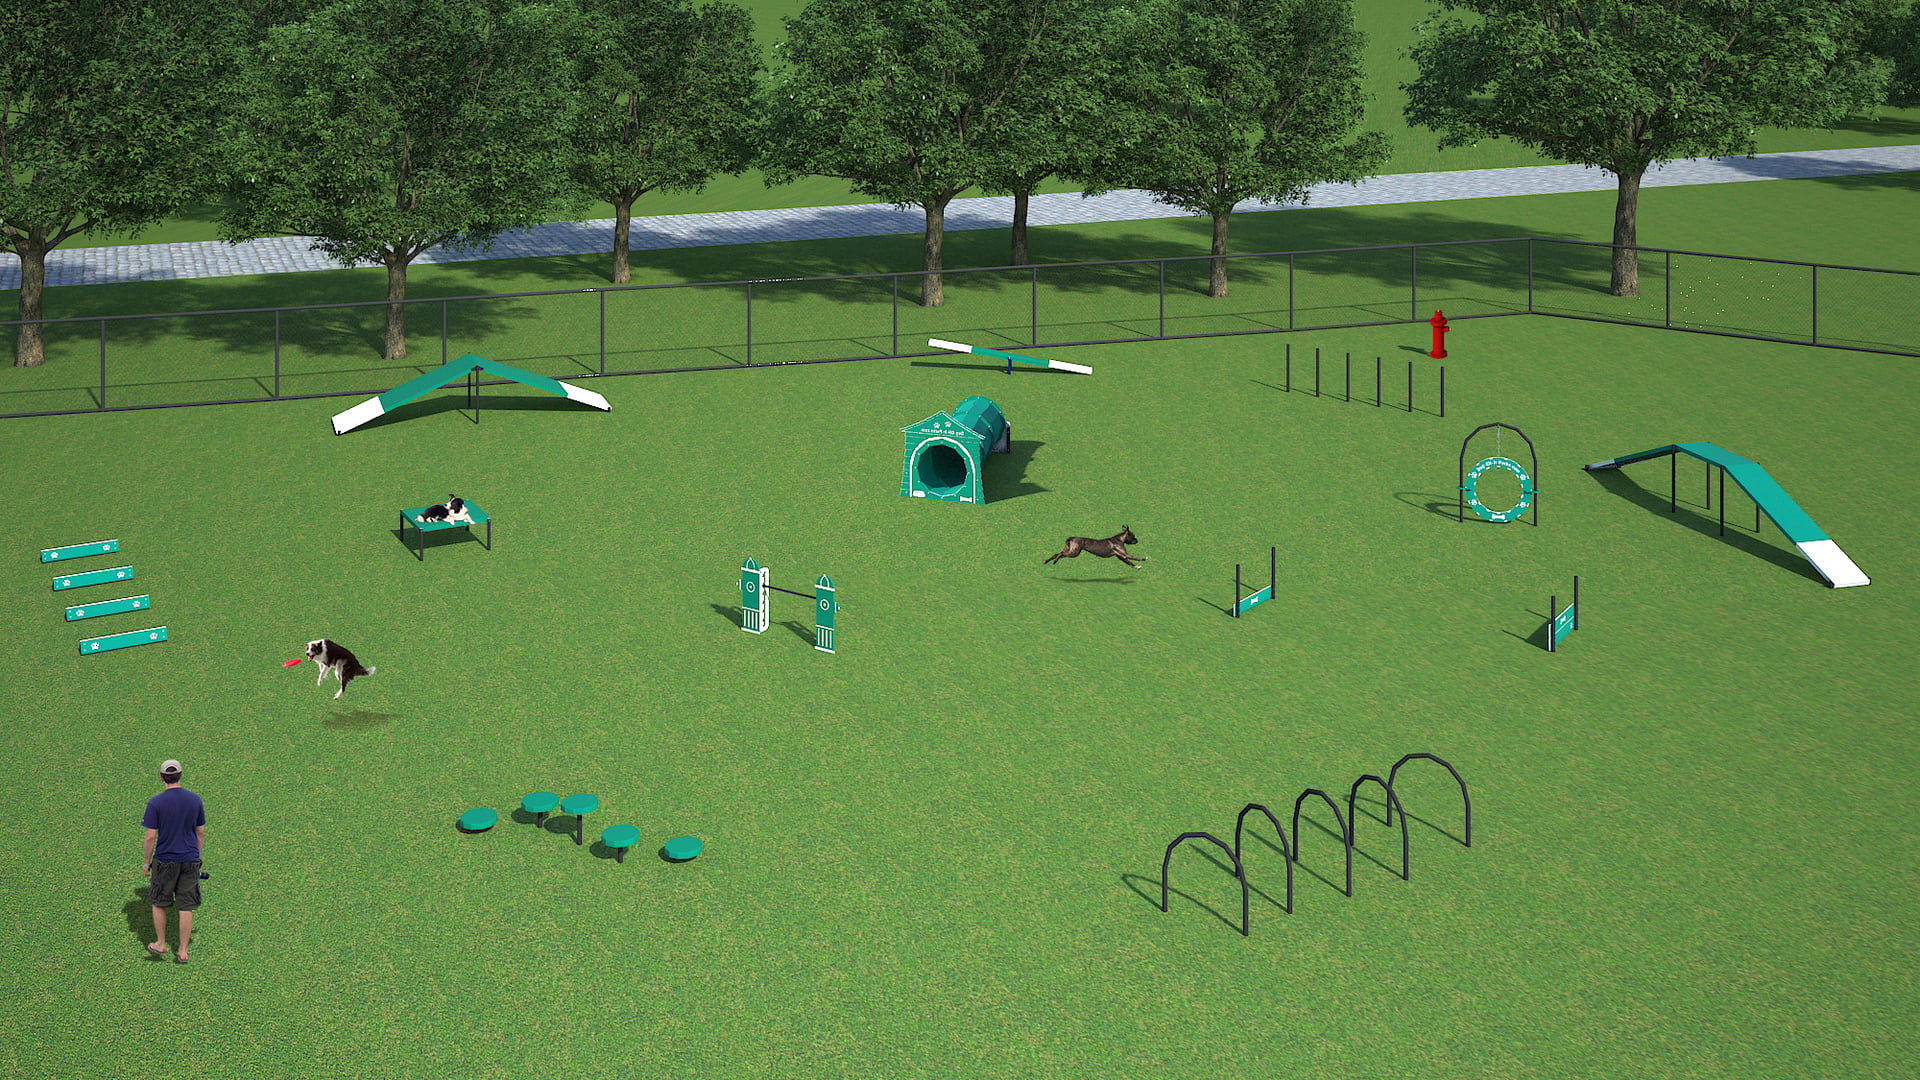 Dog Park Equipment and Playground Equipment